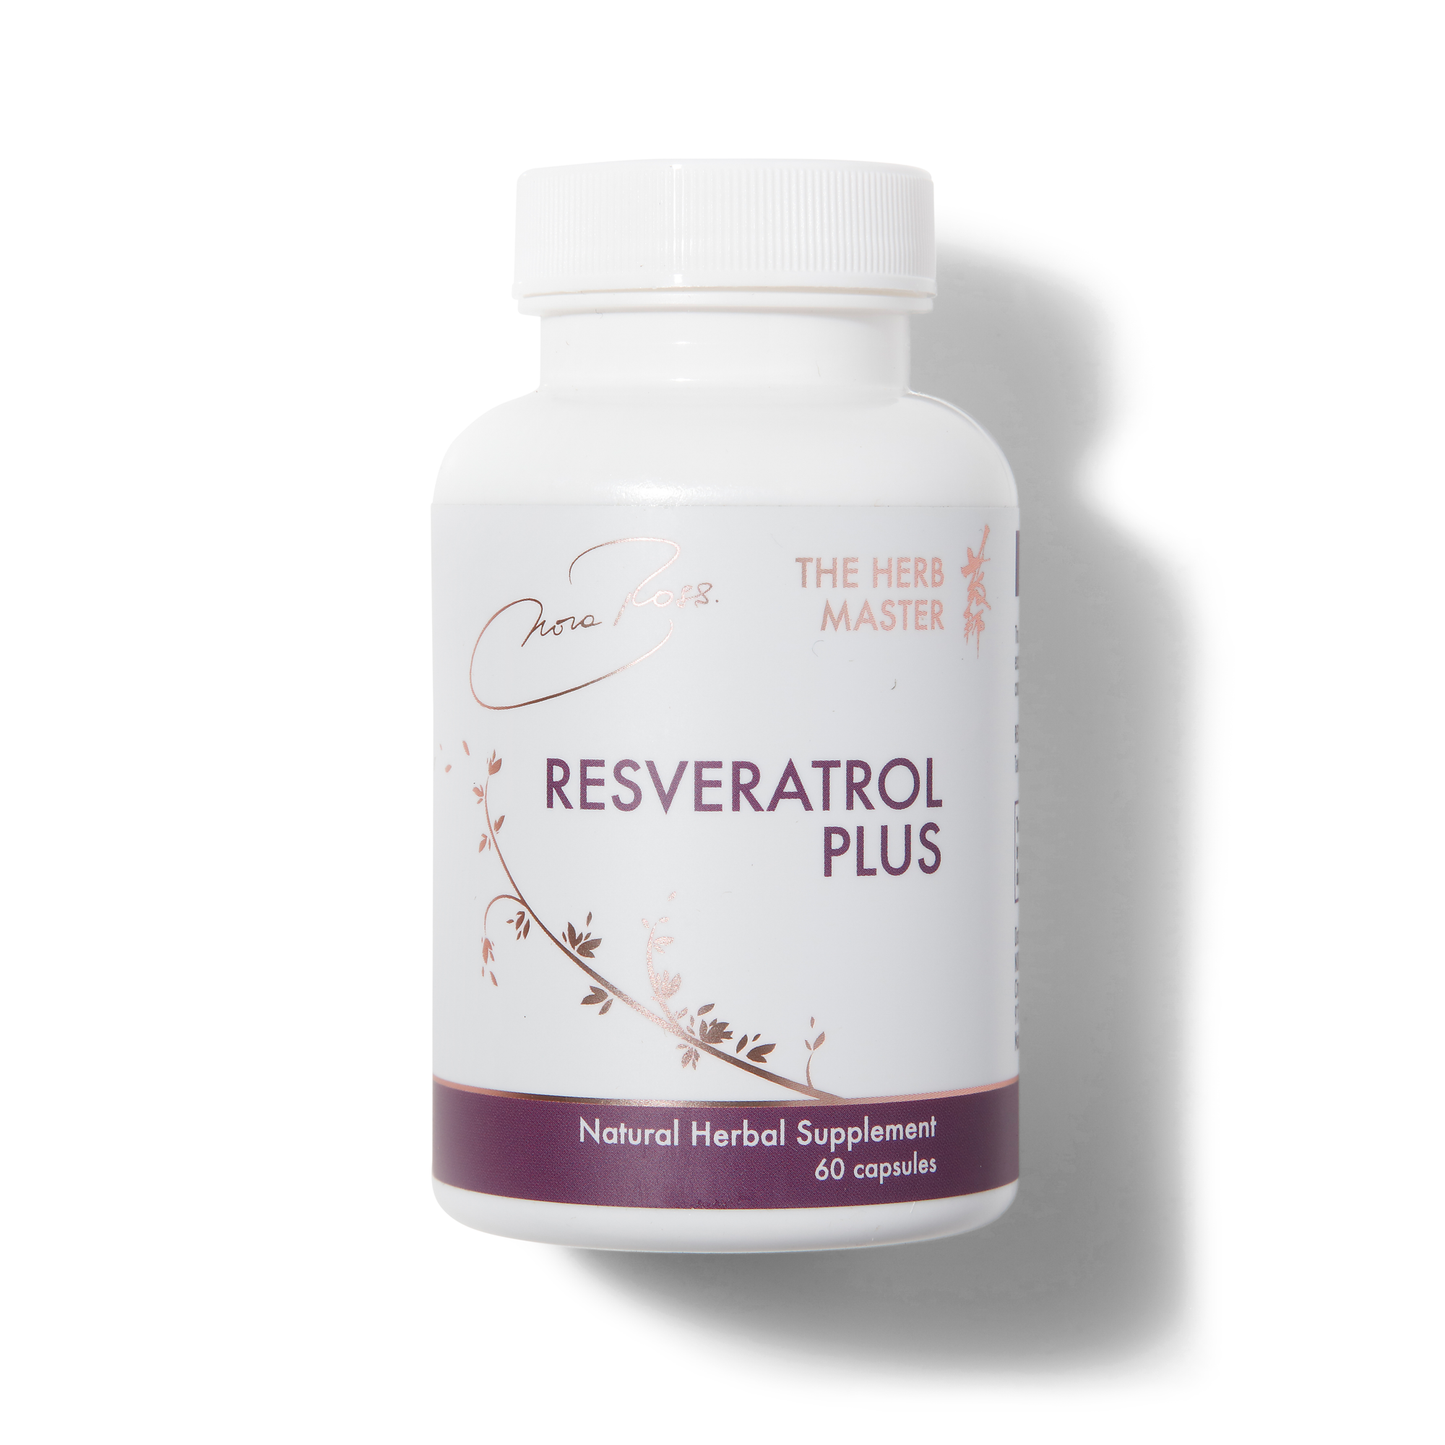 Suplementos Resveratrol Plus®: potentes antioxidantes y corteza de canela, promueve el antienvejecimiento, apoyo cardiovascular, máximos beneficios